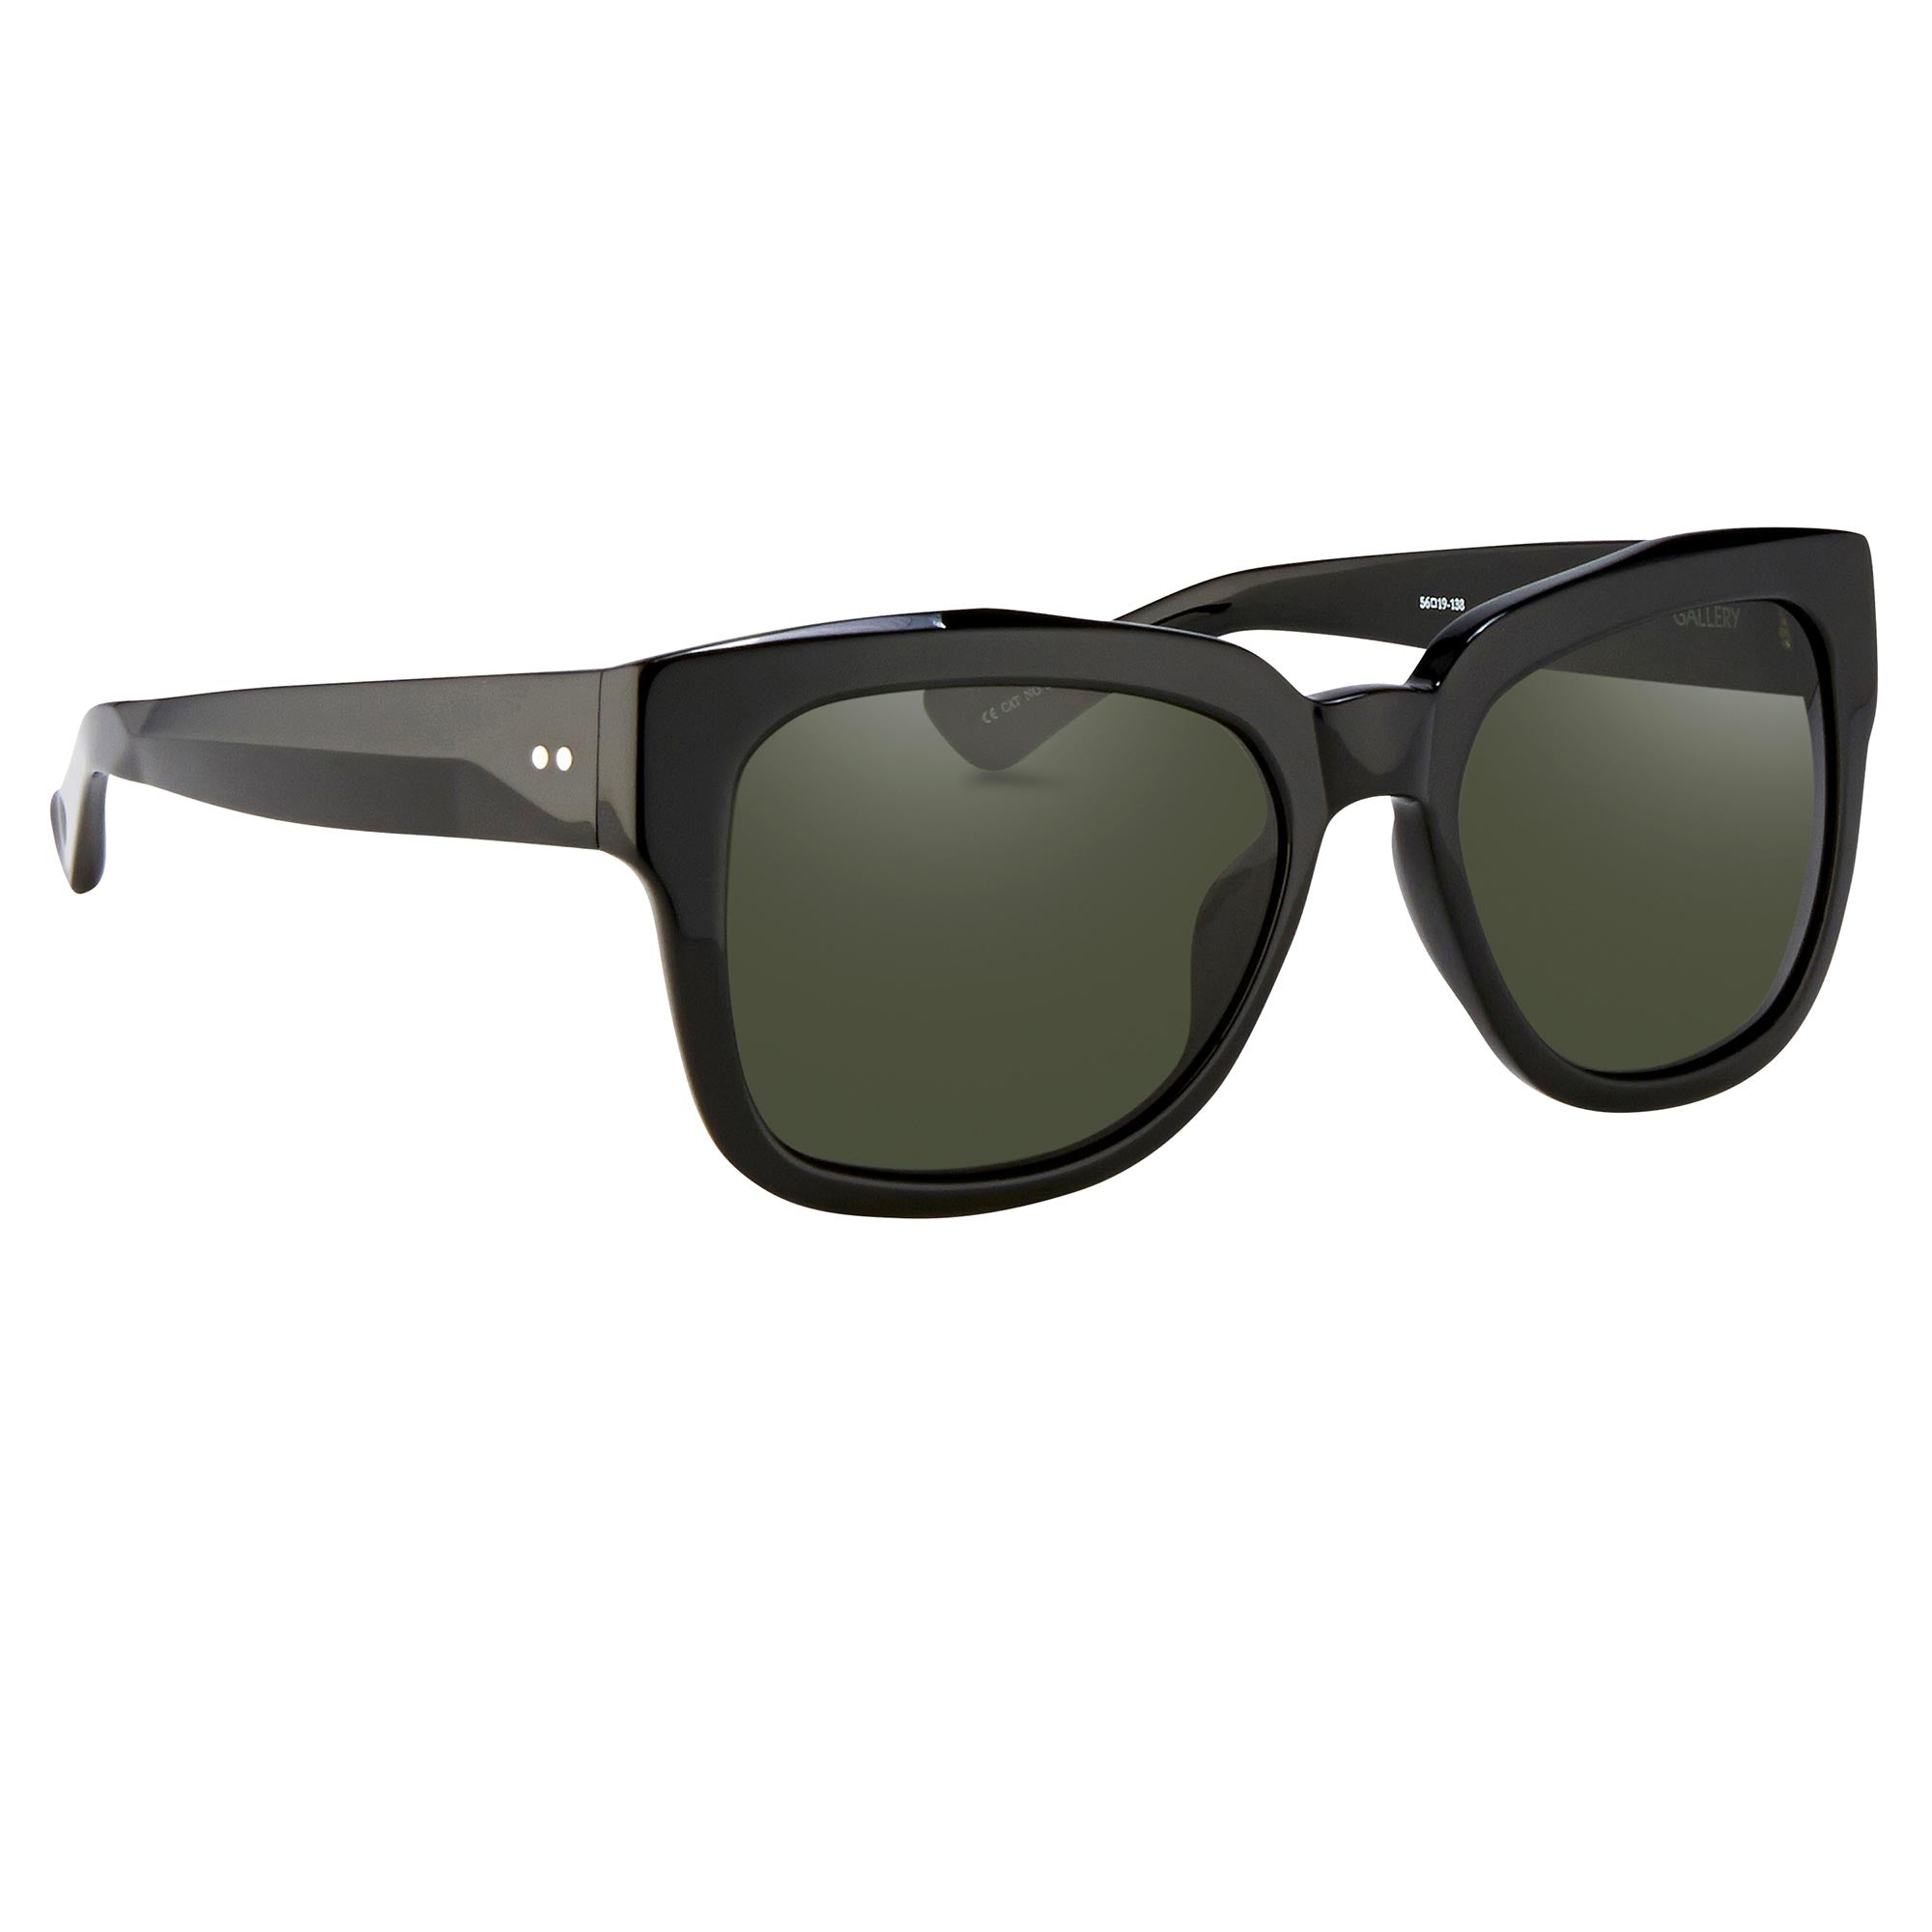 Dries van Noten 84 C12 D-Frame Sunglasses – LINDA FARROW (INT'L)